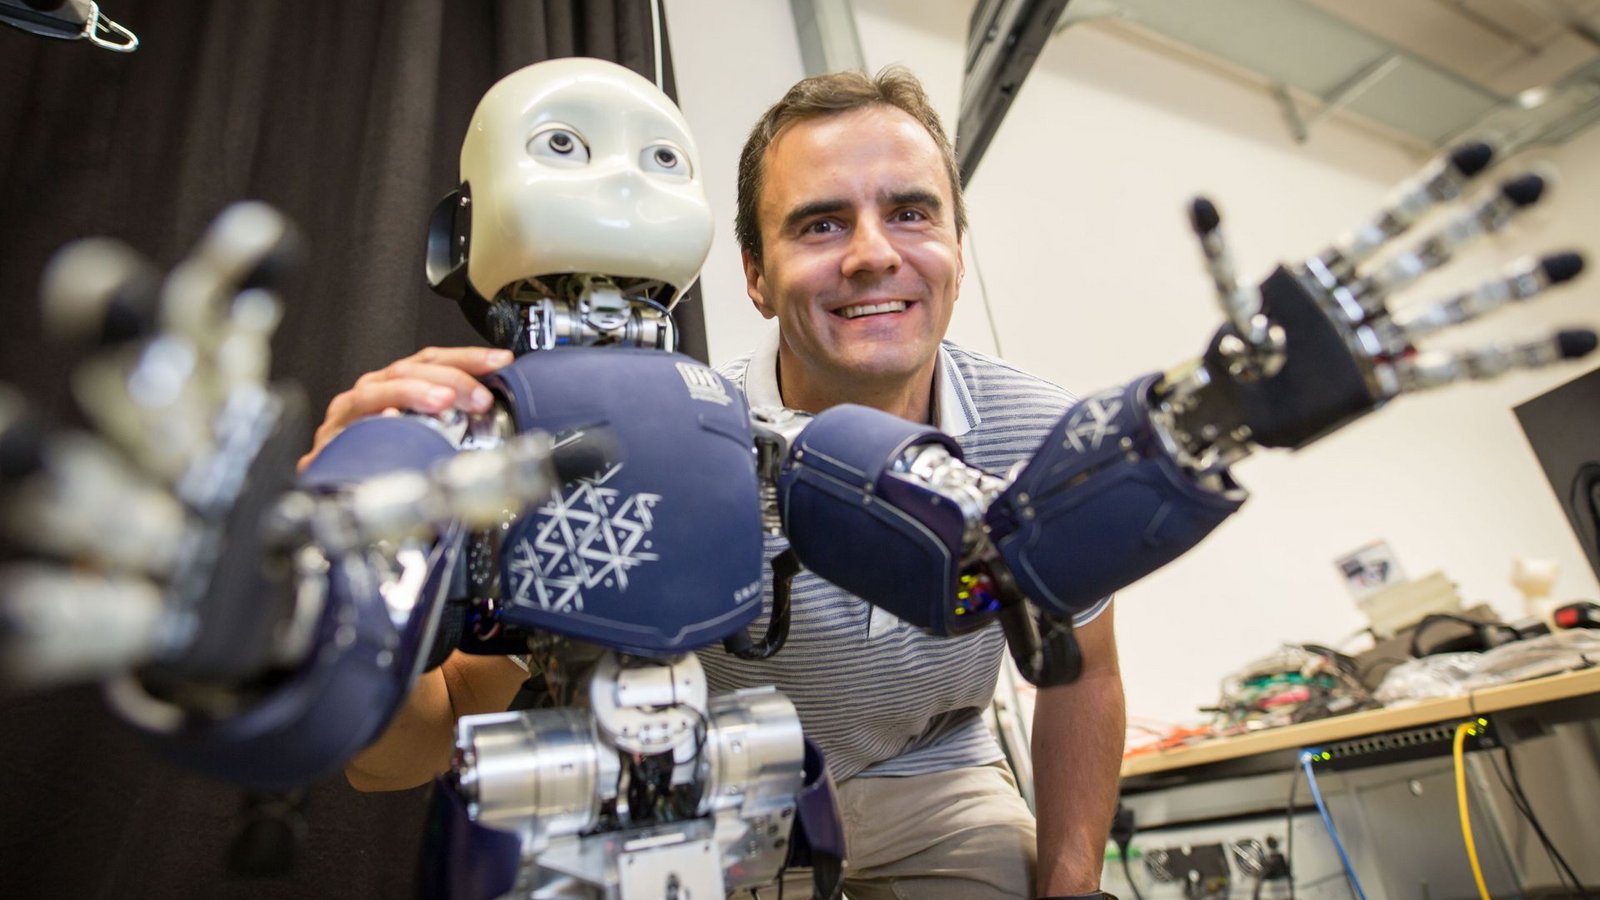 Mensch und Roboter – ein gutes Team?Foto: dpa/Frank Rumpenhorst